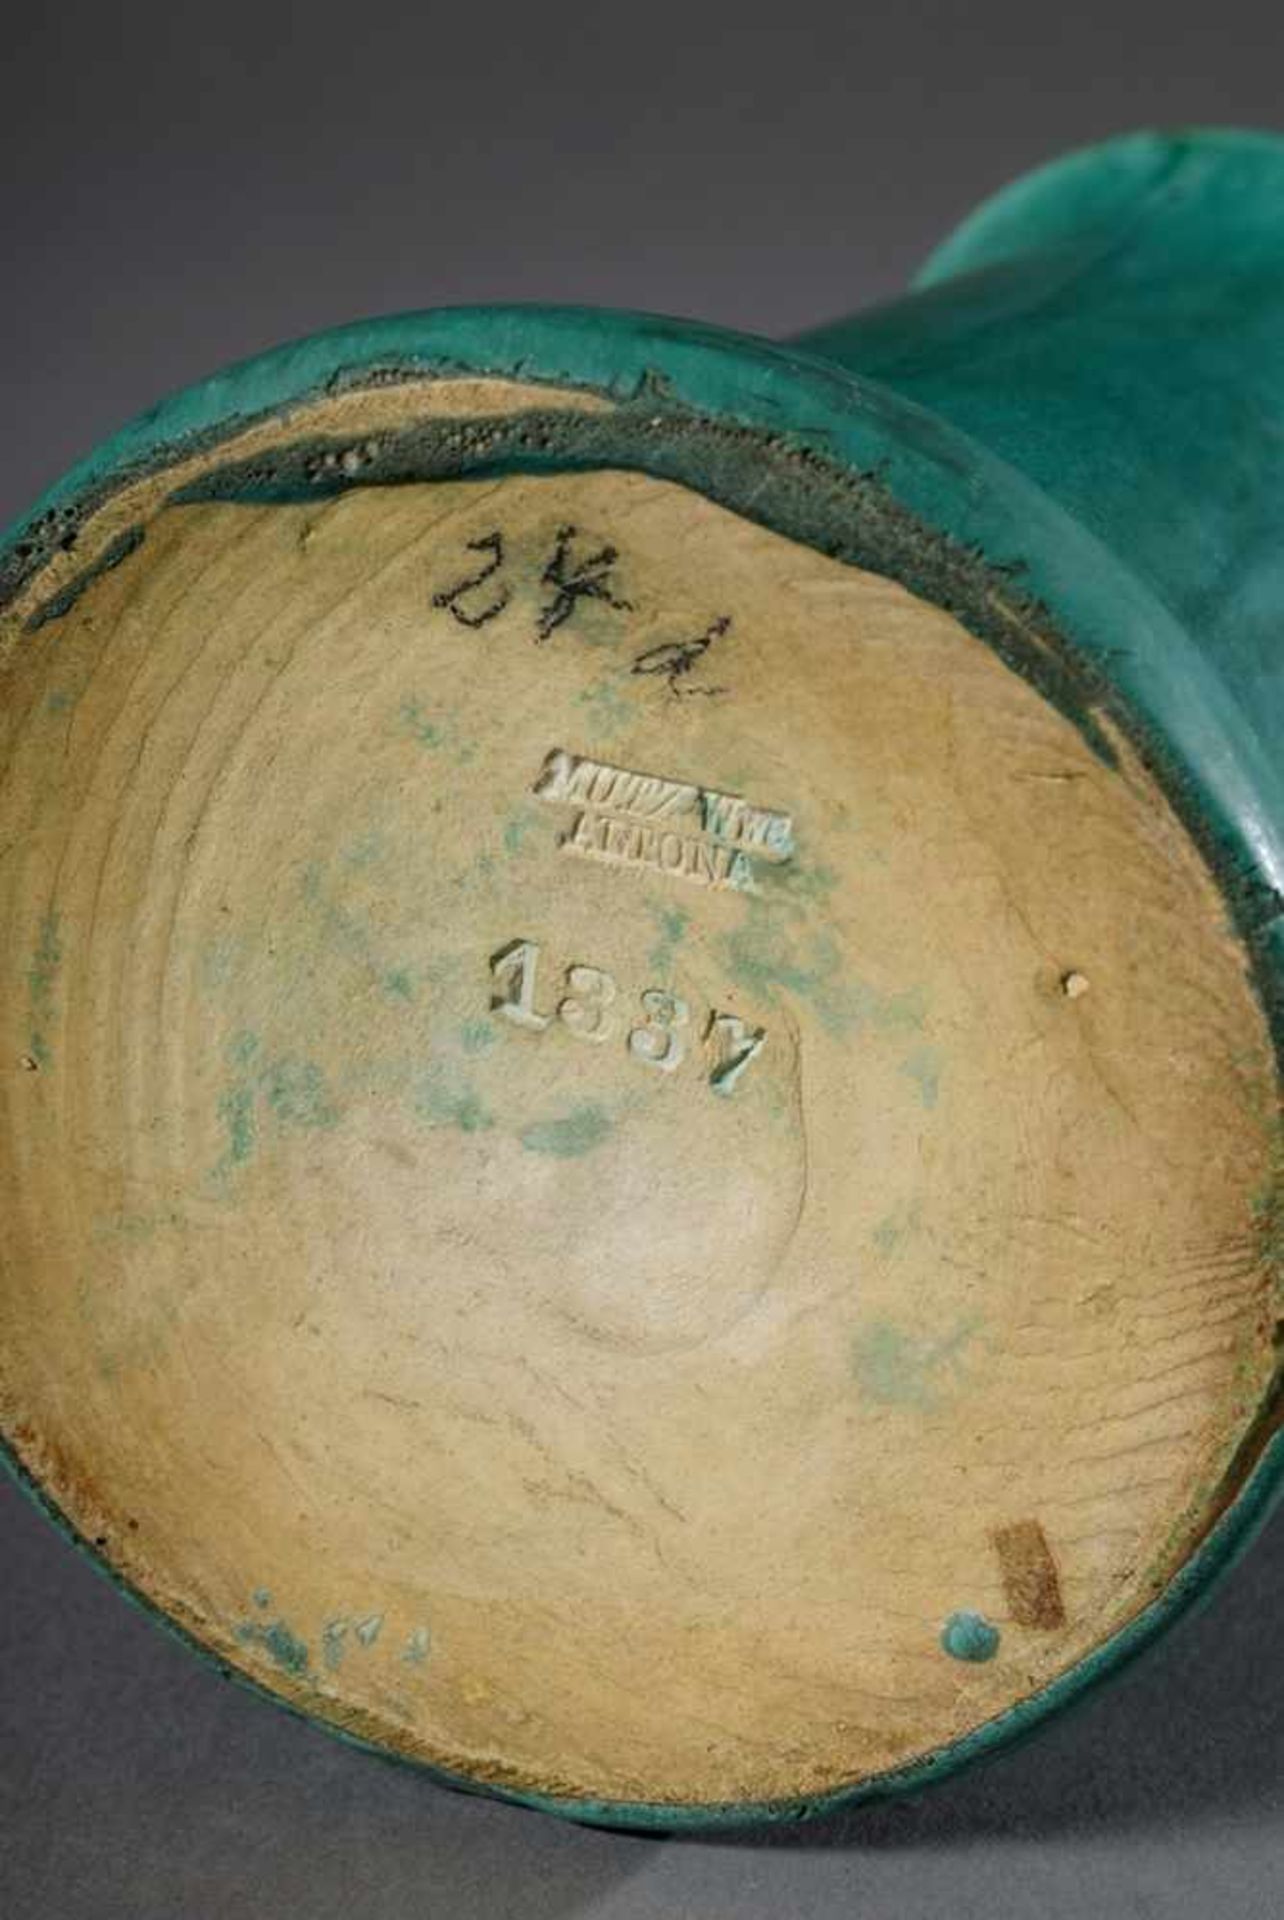 Grüne stangenförmige Vase, Mutz Wwe/Altona, Modellnr. 1337, 1913-1929, H. 19cmGreen vase, Mutz Wwe/ - Image 3 of 4